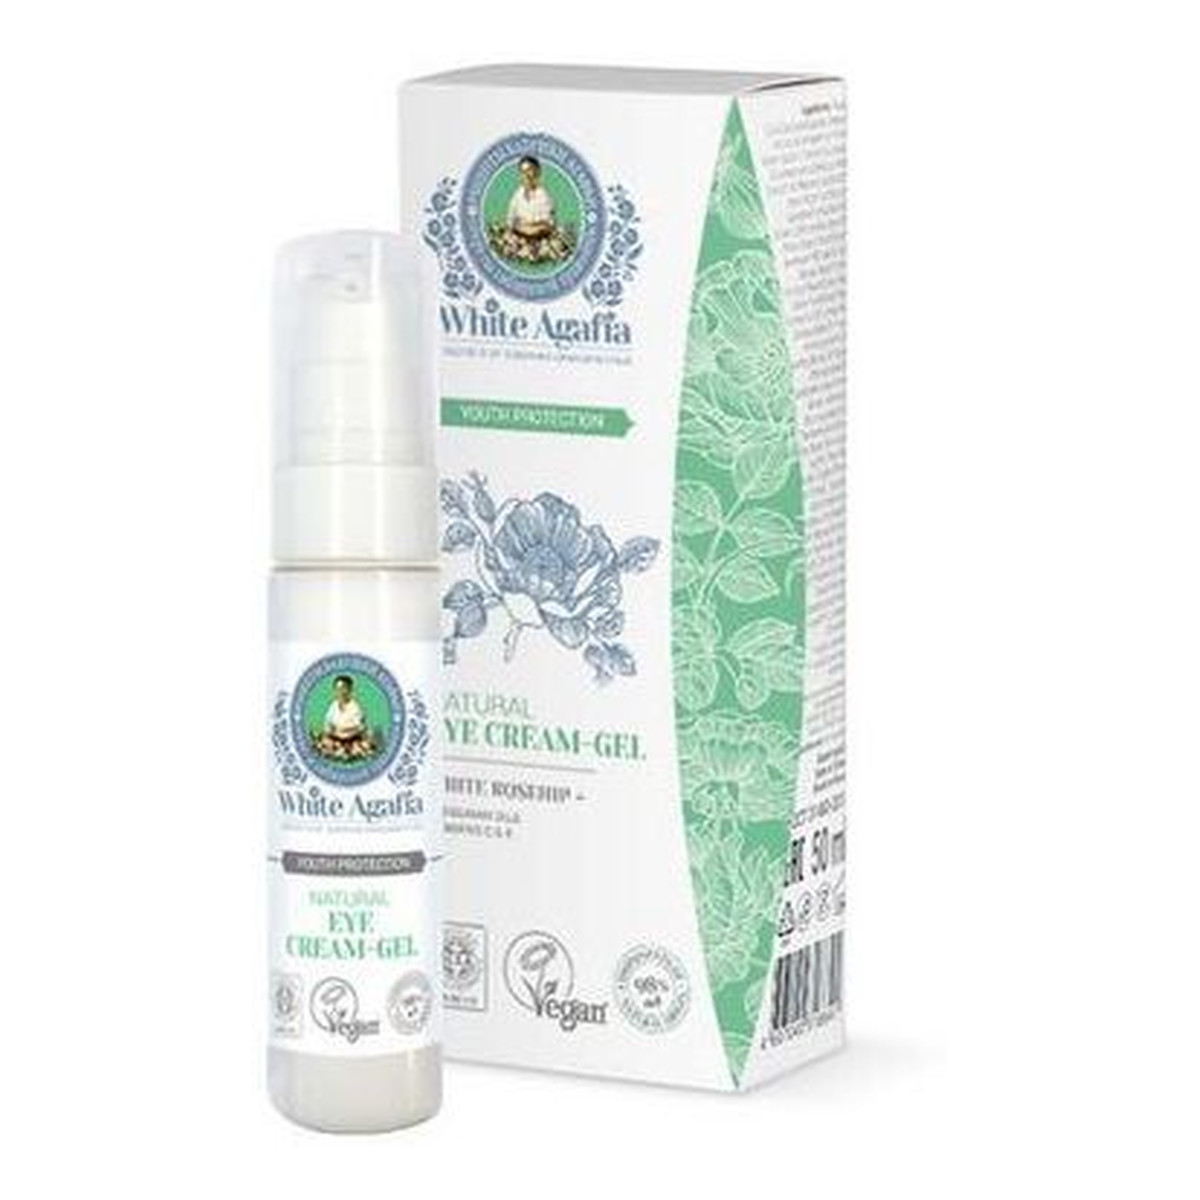 Receptury Babuszki Agafii White Agafia Zachowanie Młodości Natural Eye Cream-Gel Naturalny krem-żel pod oczy do 35 lat 30ml